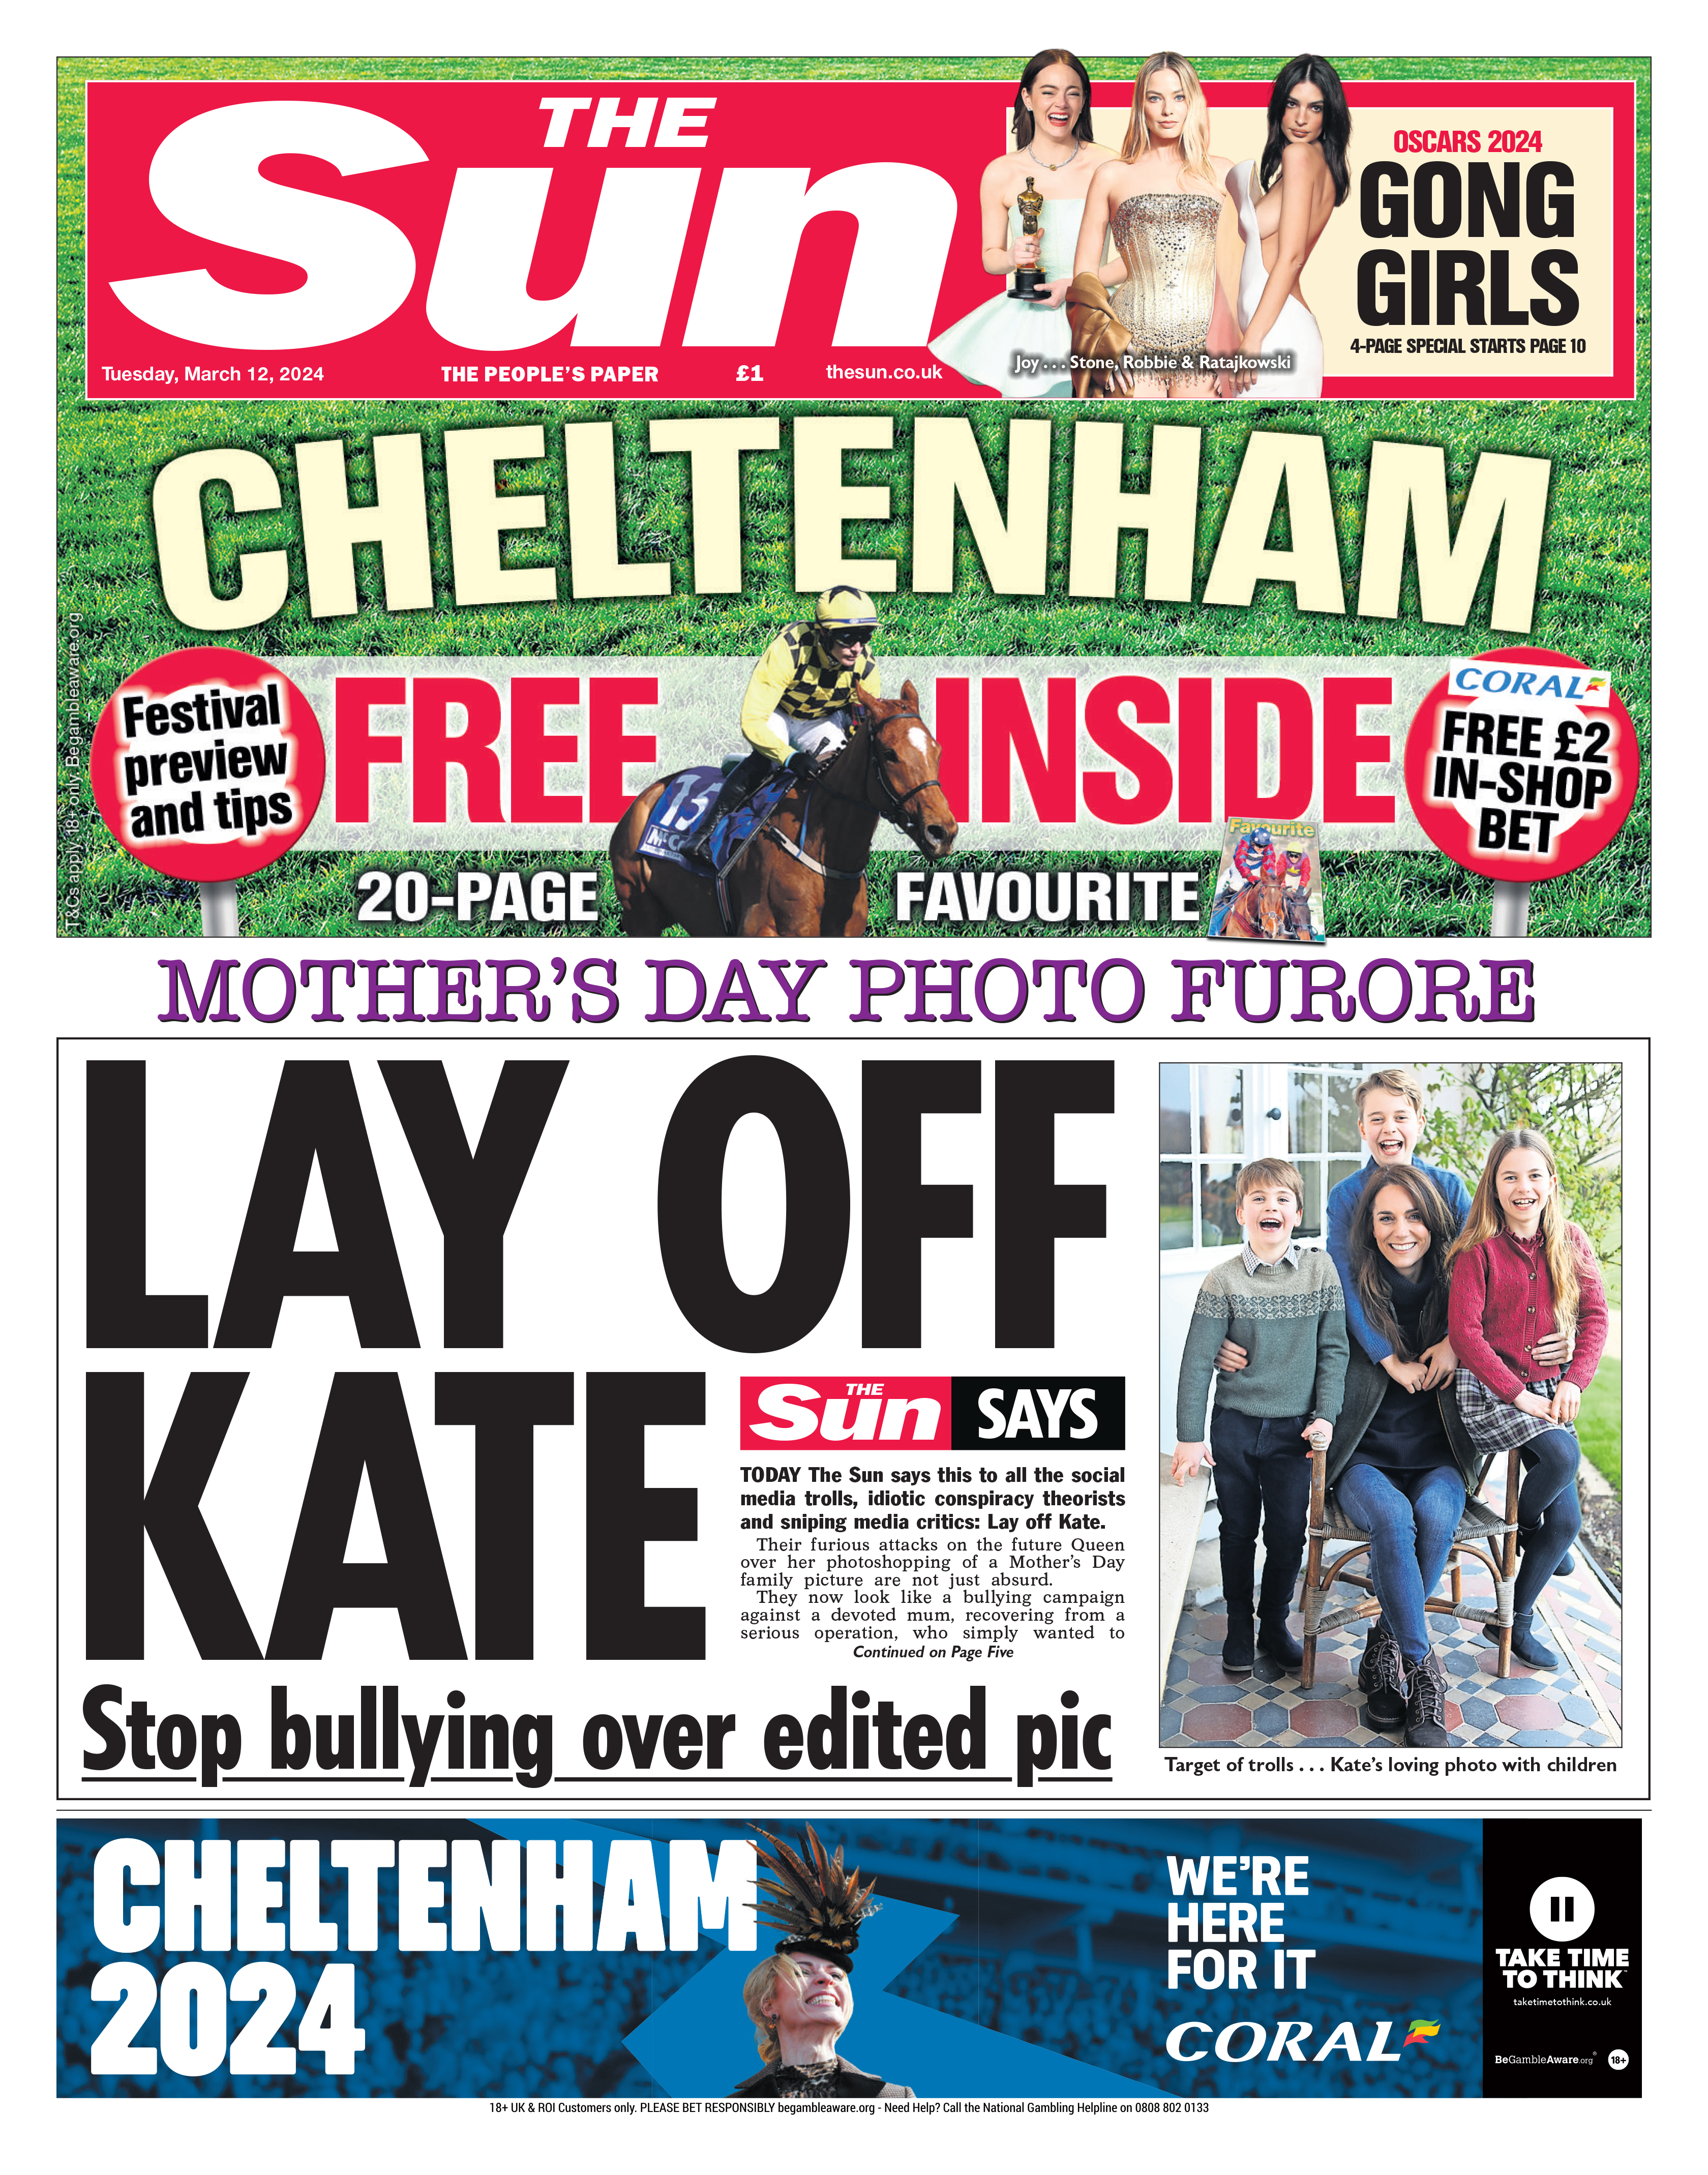 Letzte Woche sprang The Sun zu Kates Verteidigung, als von allen Seiten Kritik an ihrem bearbeiteten Bild laut wurde